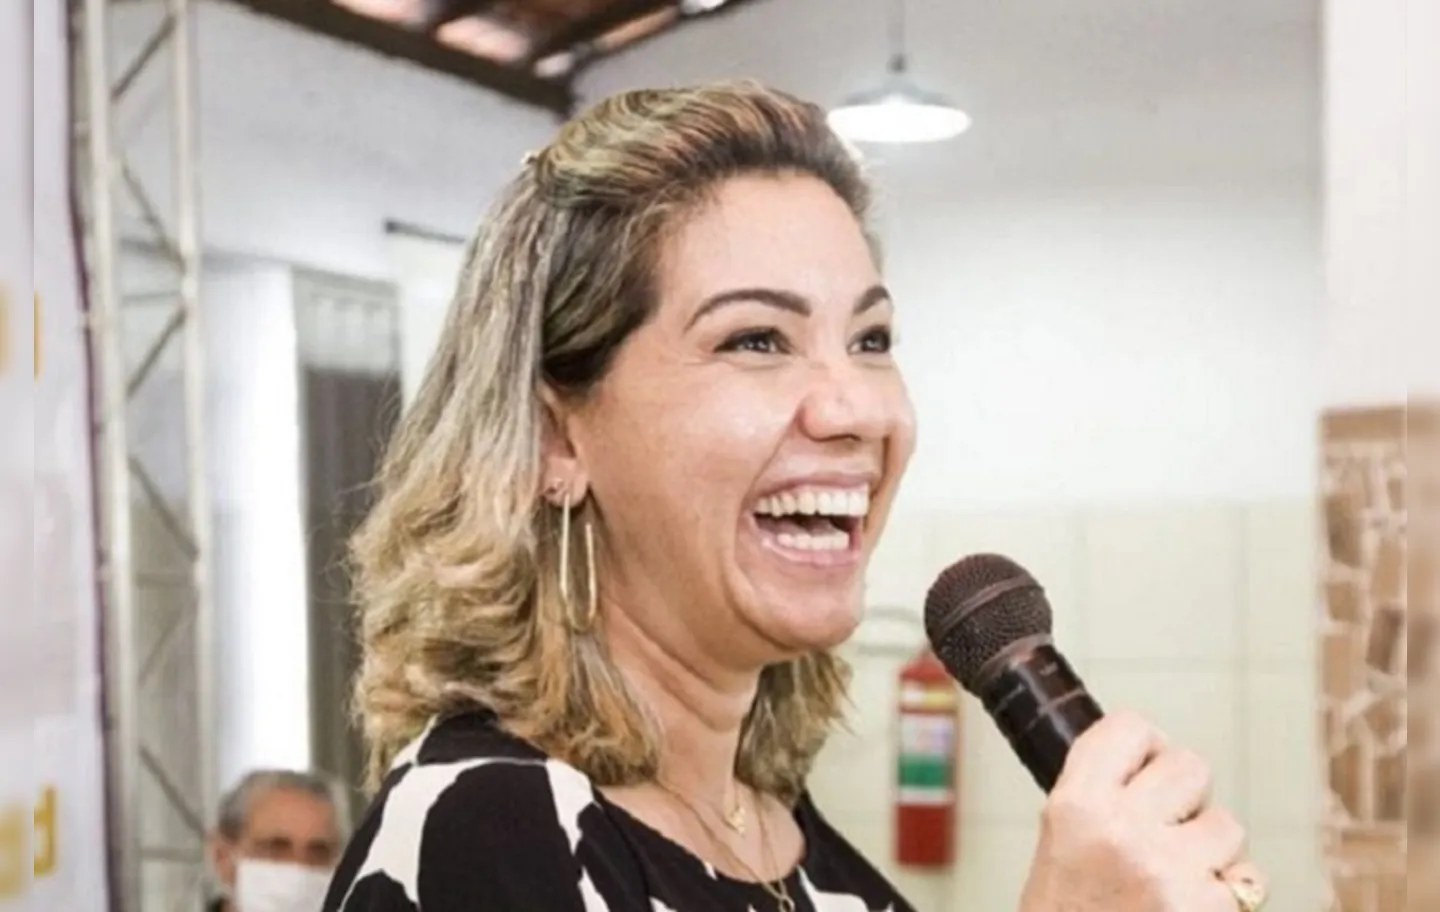 Em caso de descumprimento da recomendação, por parte da prefeita Alessandra Gomes (PSD), pode se caracterizar como improbidade administrativa ou ilícitos civis e penais